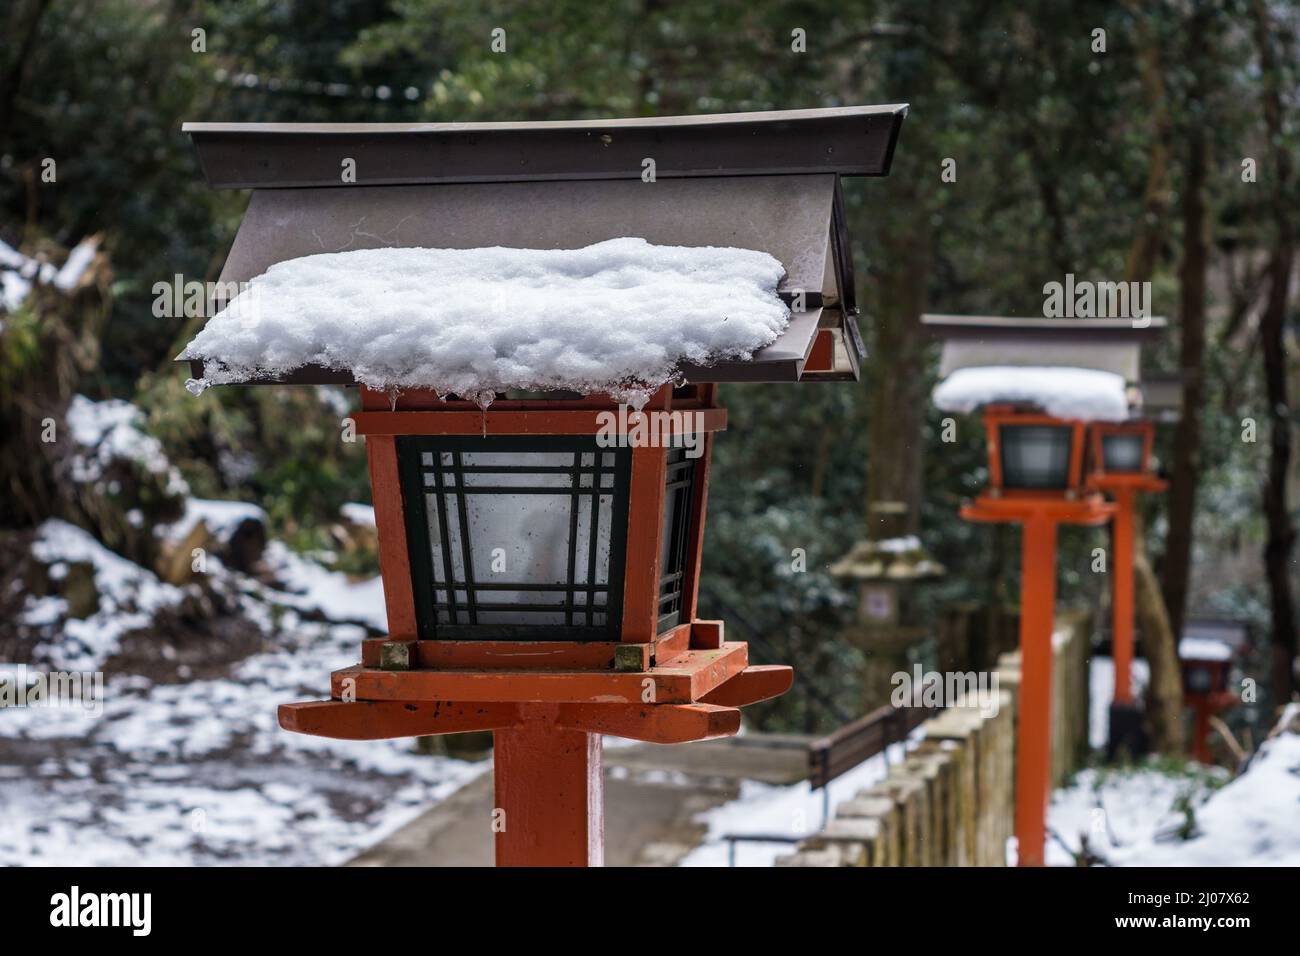 Lanterne japonaise traditionnelle en bois recouverte de neige au temple Kurama-dera de Kyoto au Japon Banque D'Images